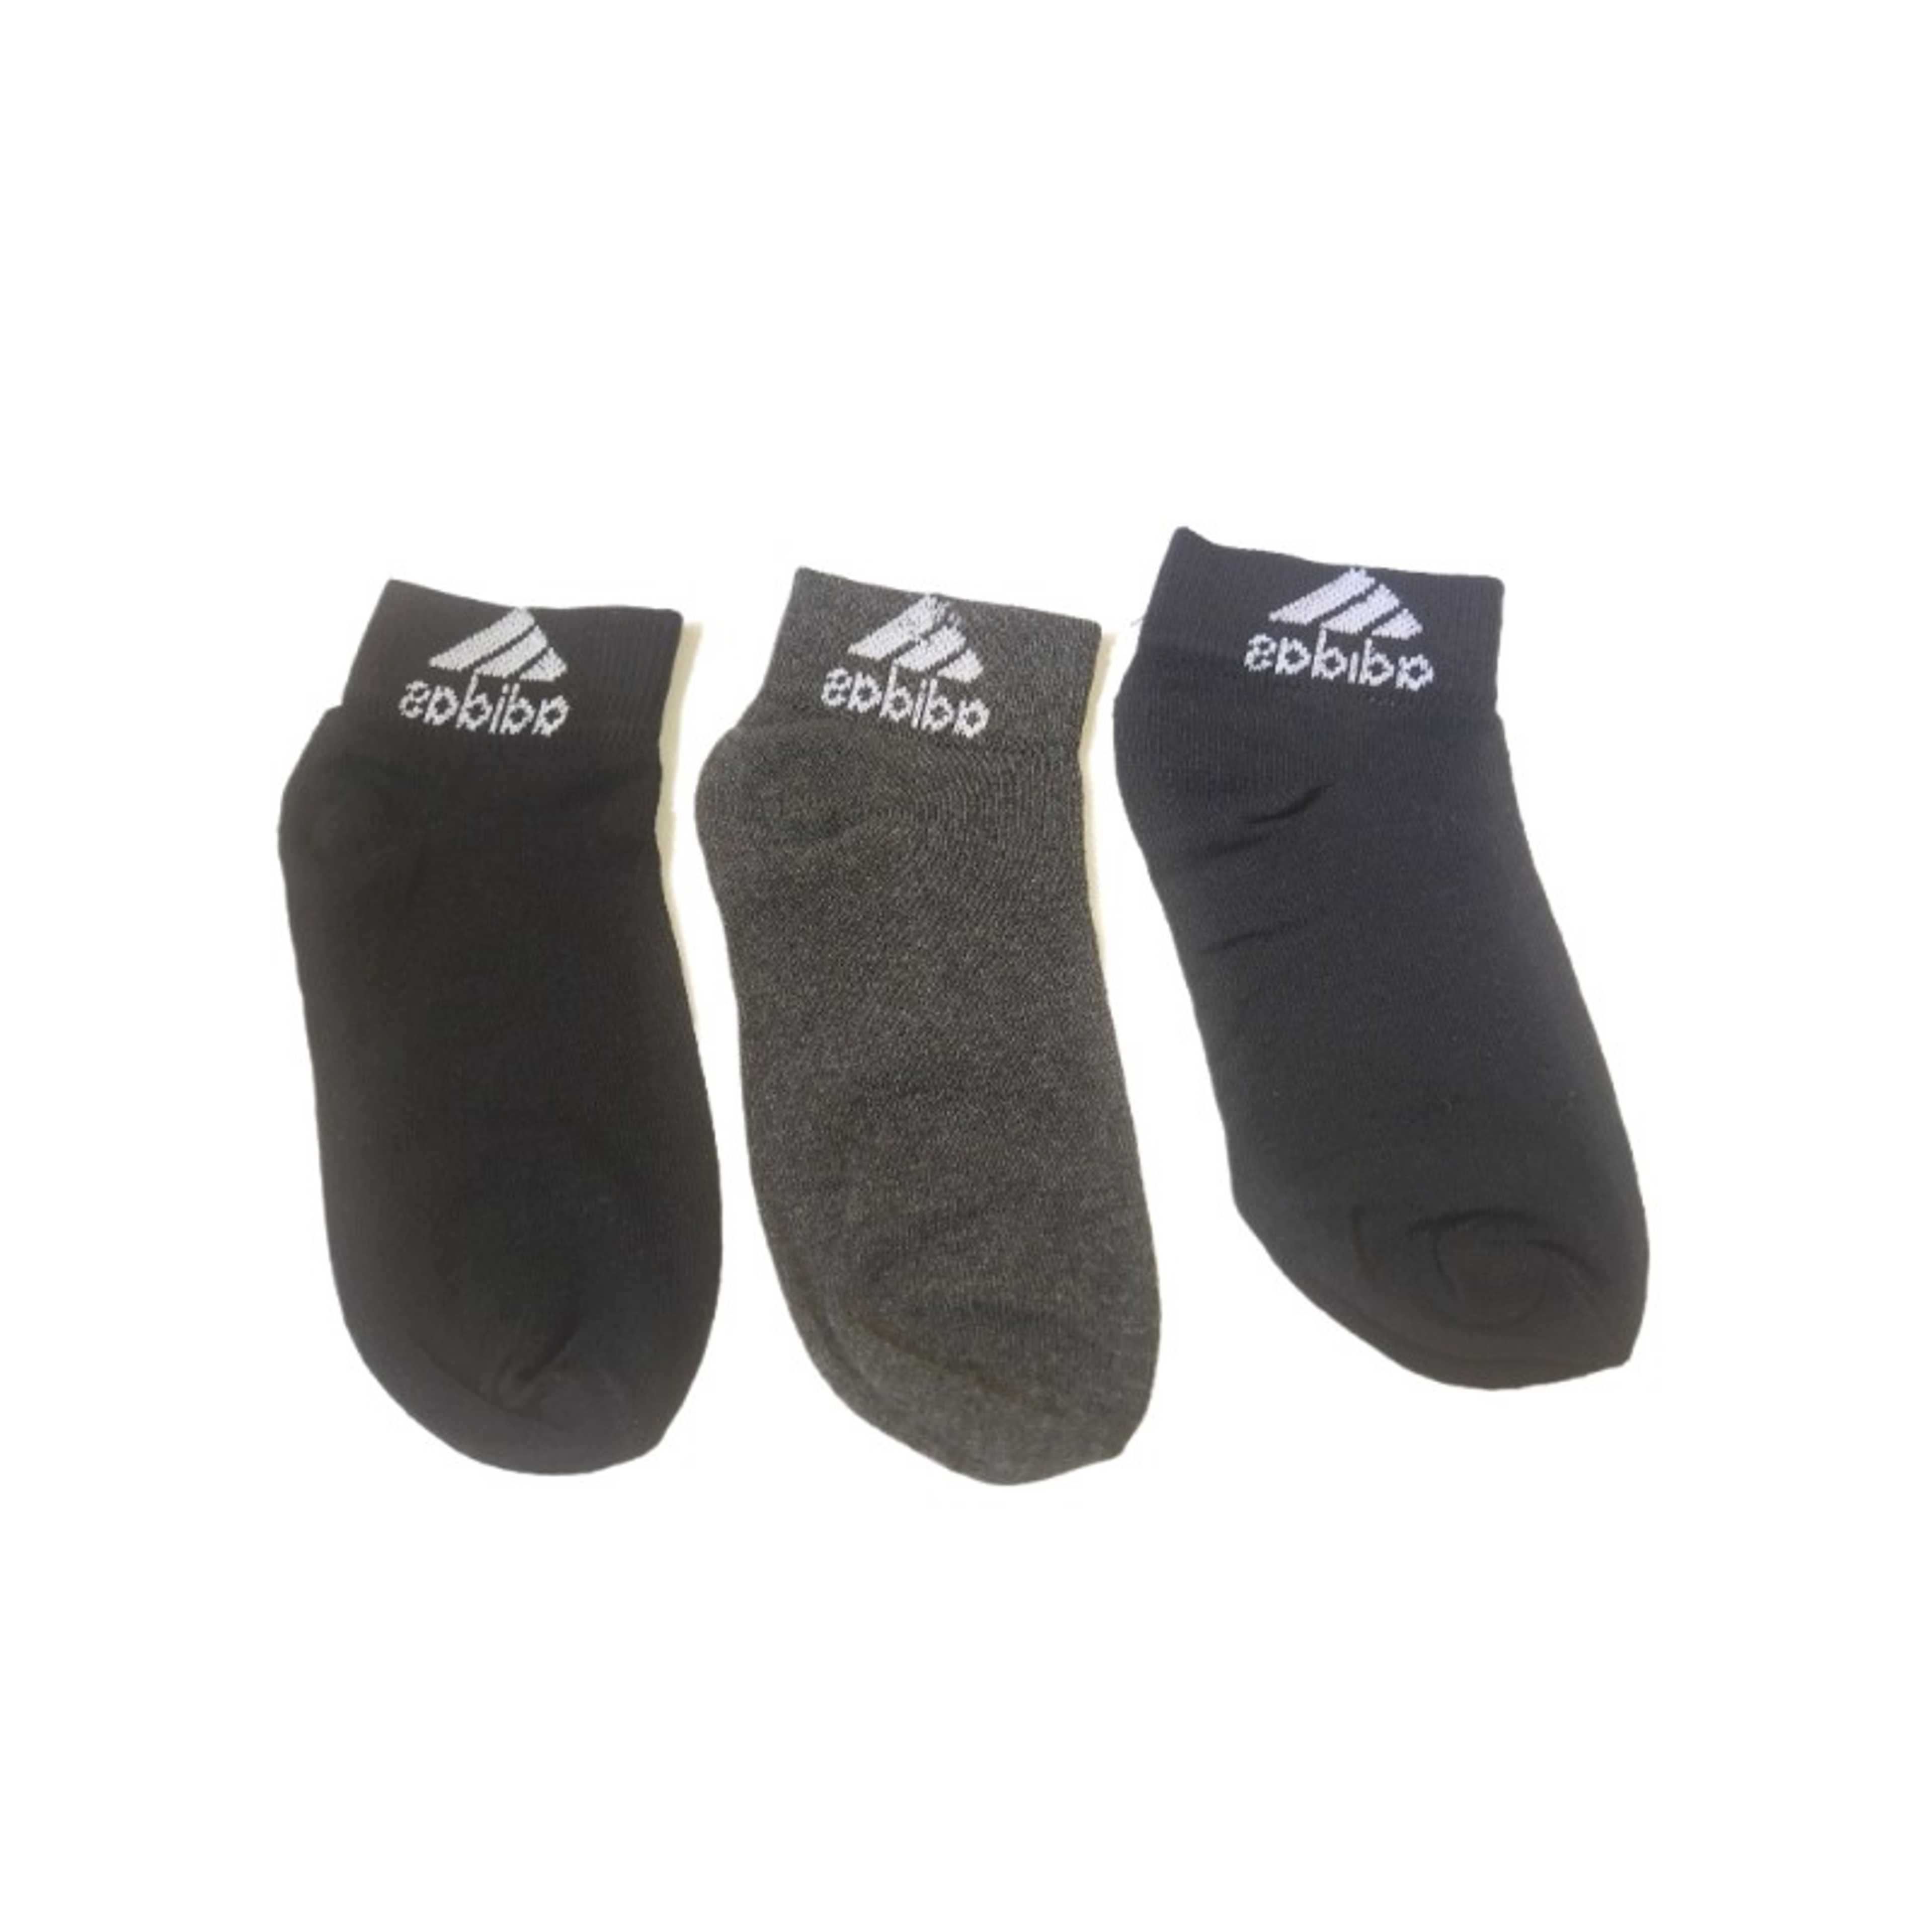 Socks Pack Of 3 Pairs Ankle Socks For Men Women, Braded Socks, Cotton Moza - Random colors